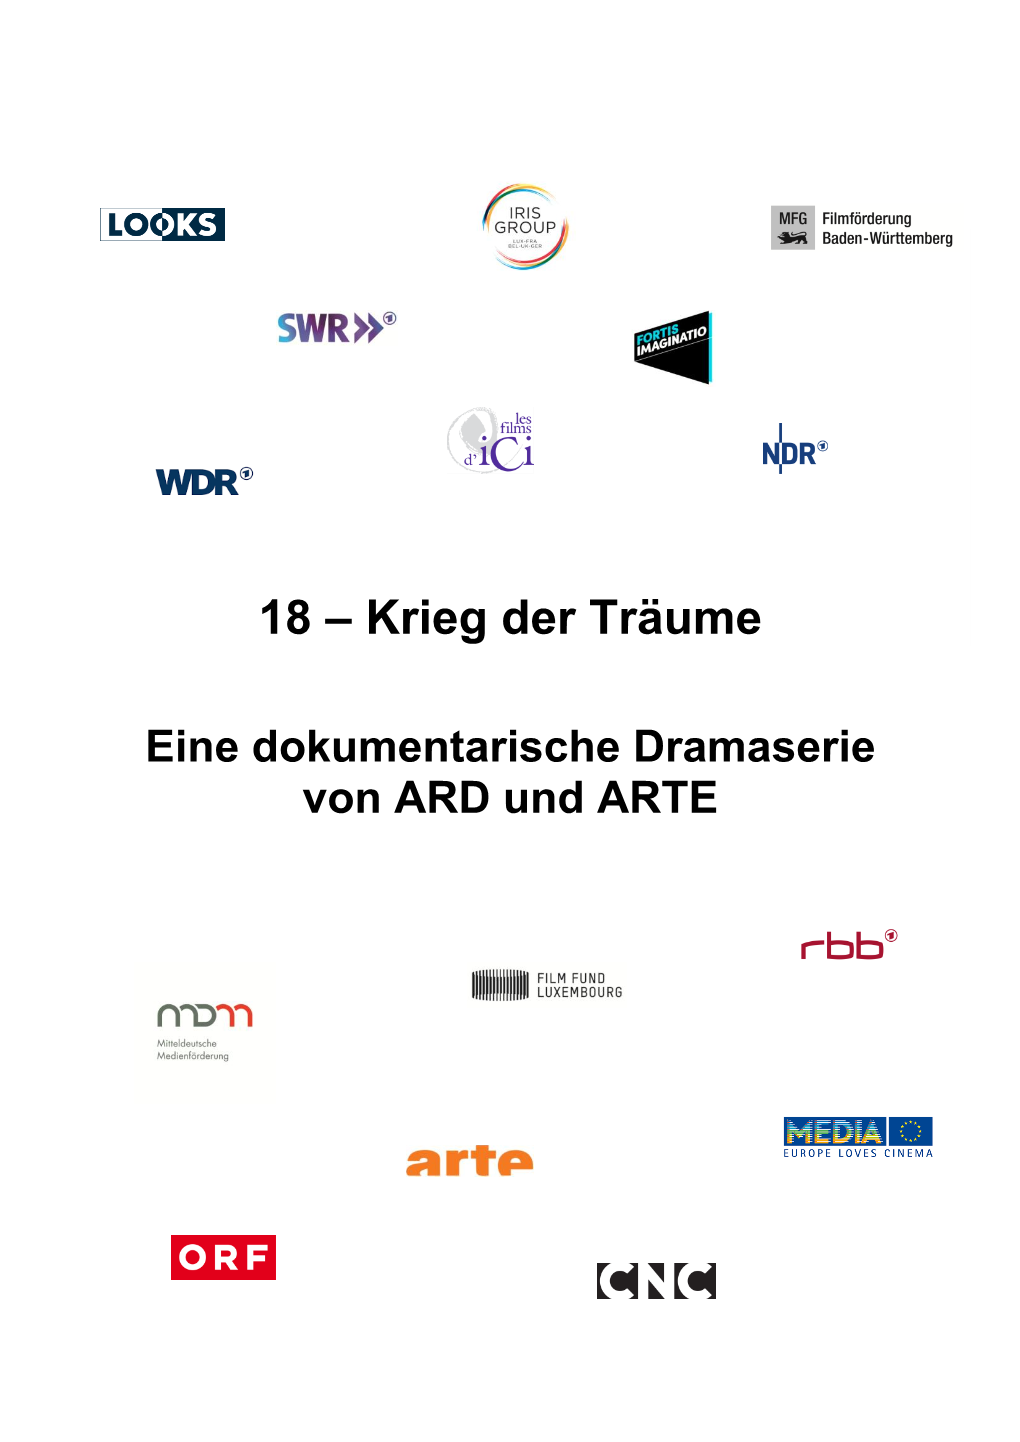 Eine Dokumentarische Dramaserie Von ARD Und ARTE